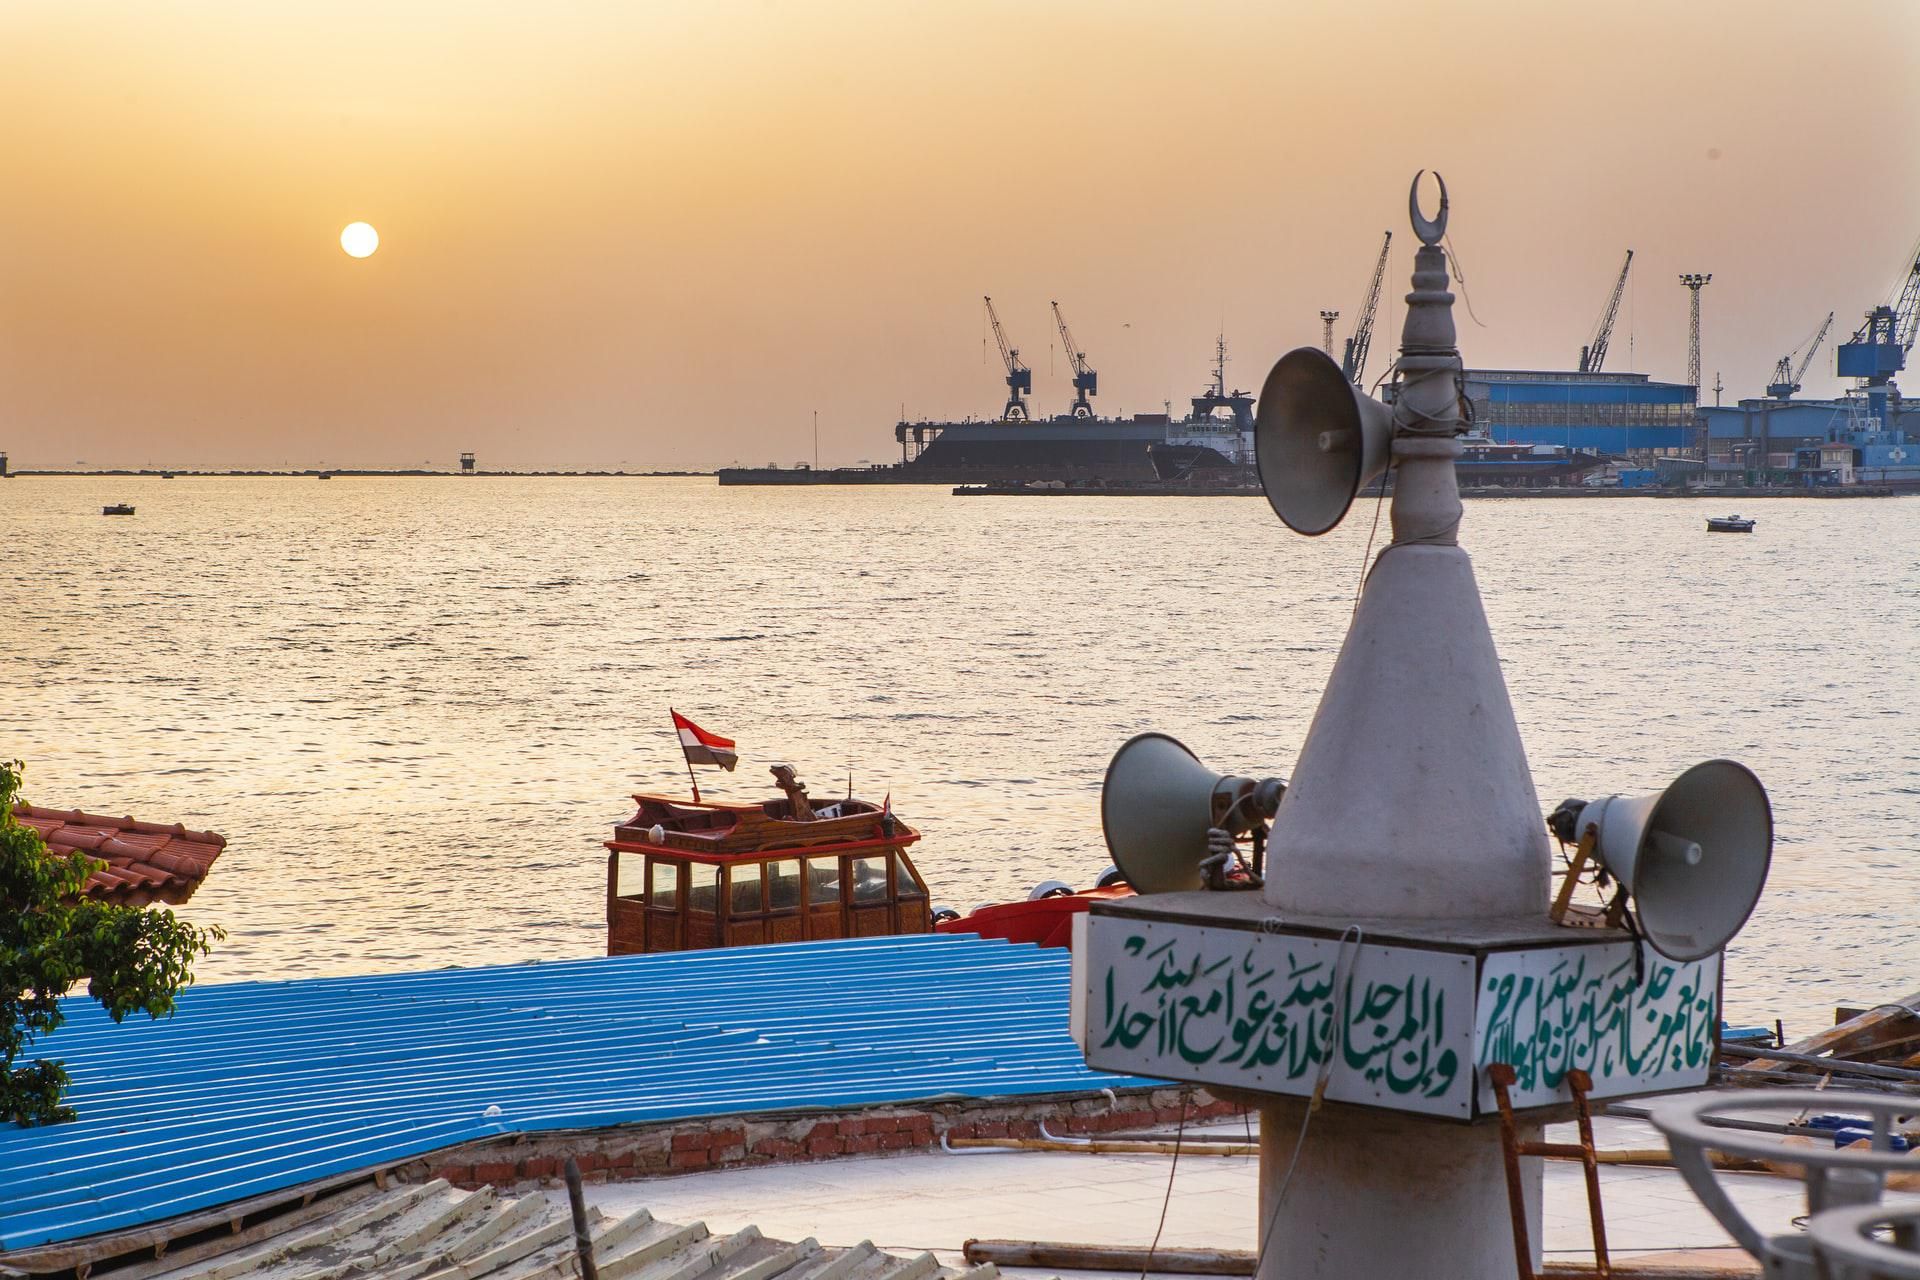 Szuezi-csatorna egyik kikötője